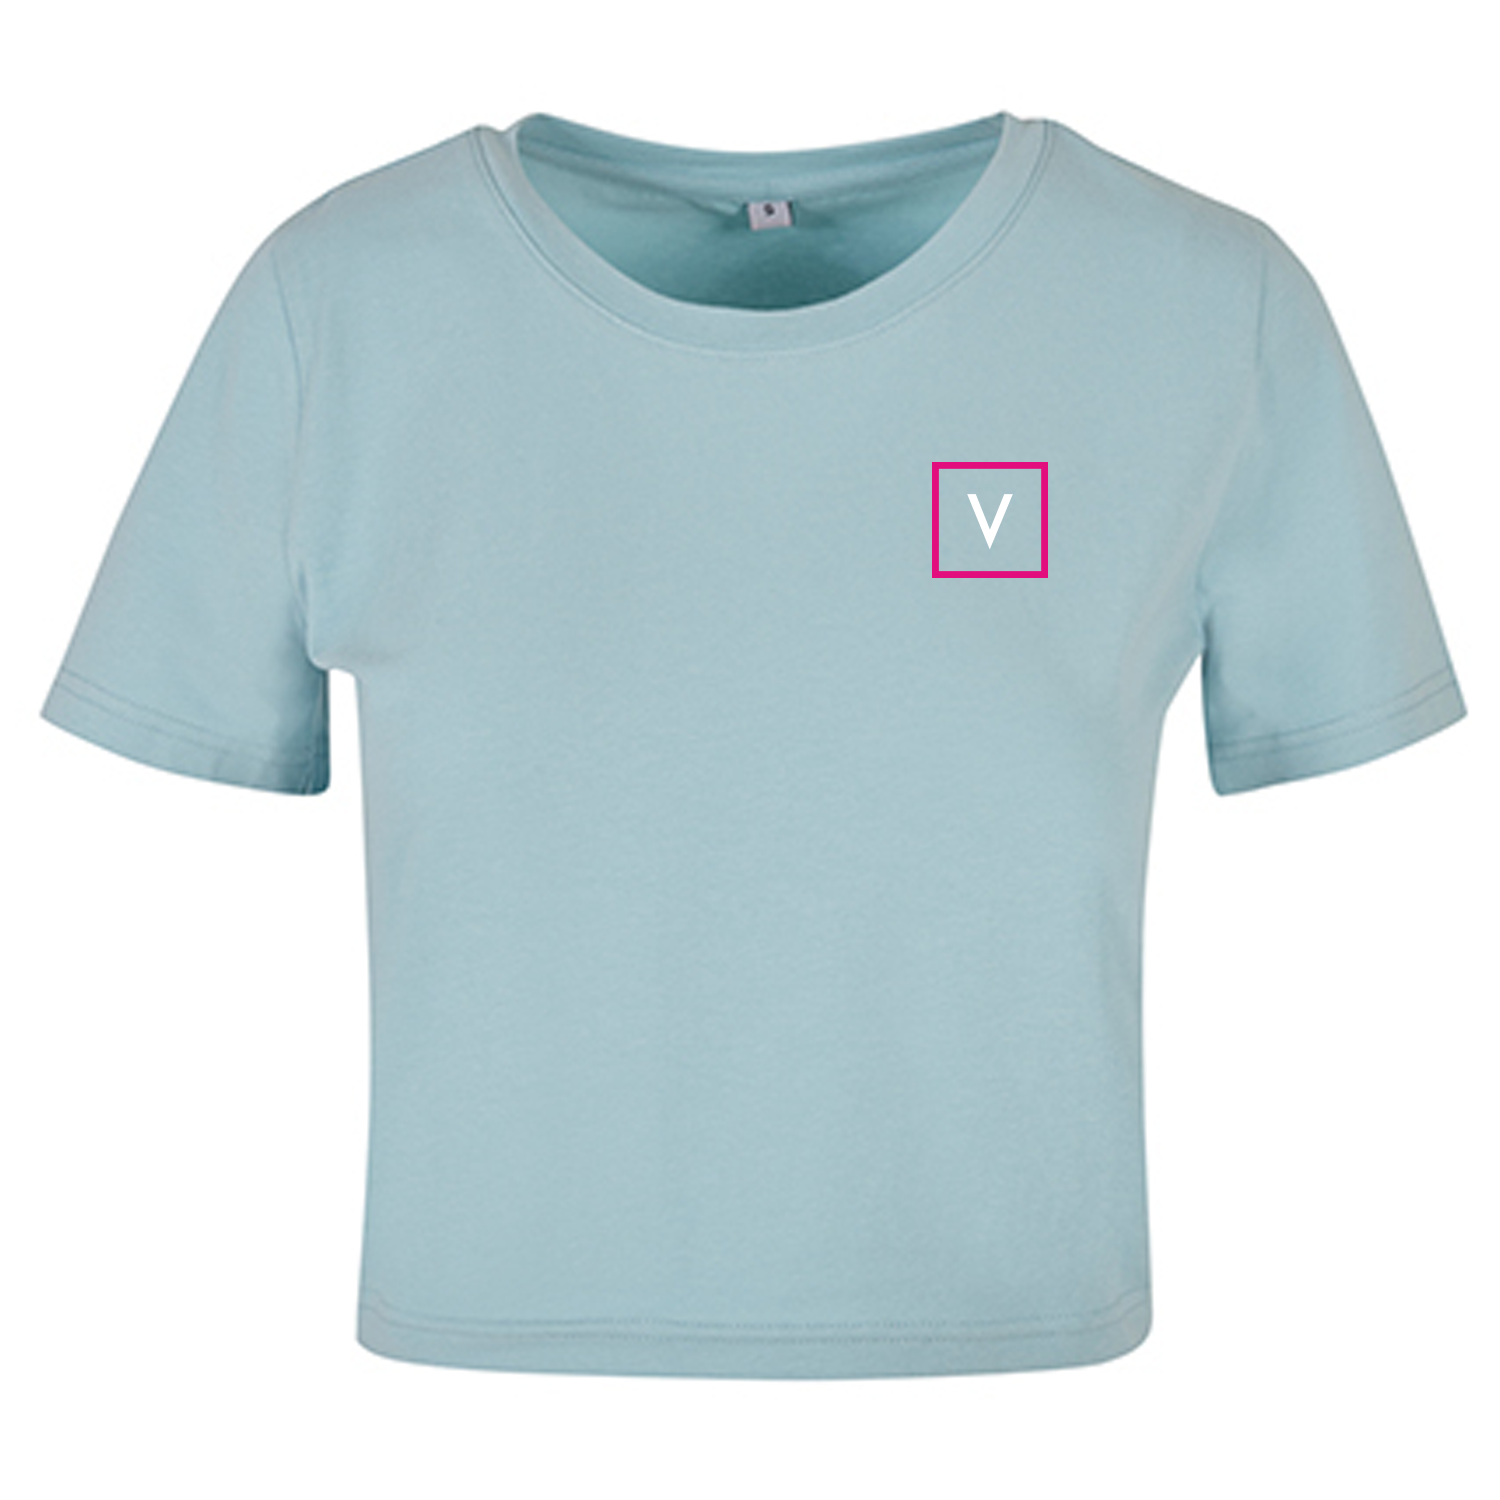 VENUS Girl's Cropped Top "V" - Ocean Blue/Weiß/Pink